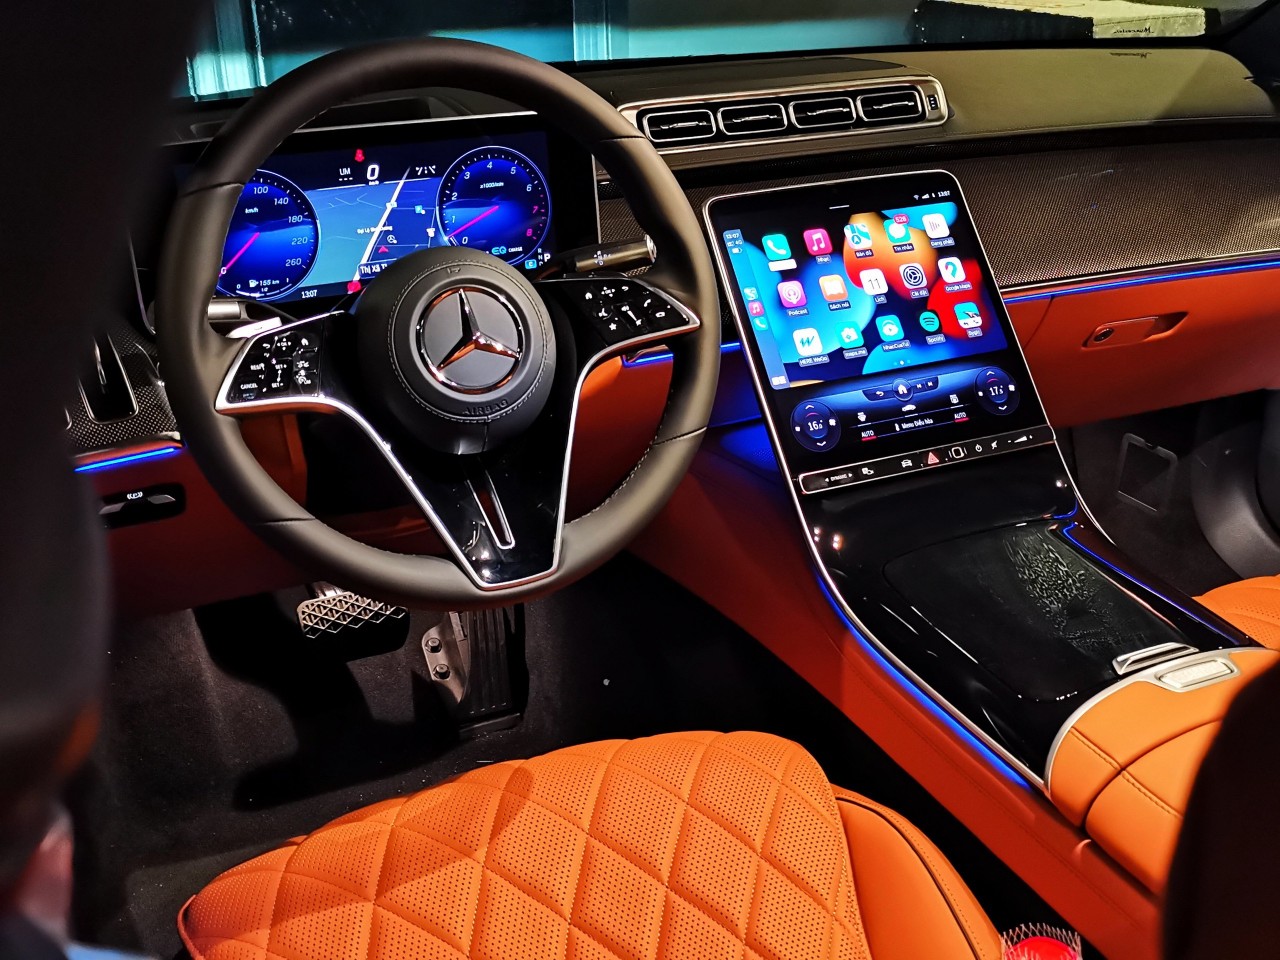 Nguyễn Quốc Cường và Đàm Thu Trang bổ sung Mercedes Benz S450 Luxury vào bộ sưu tập